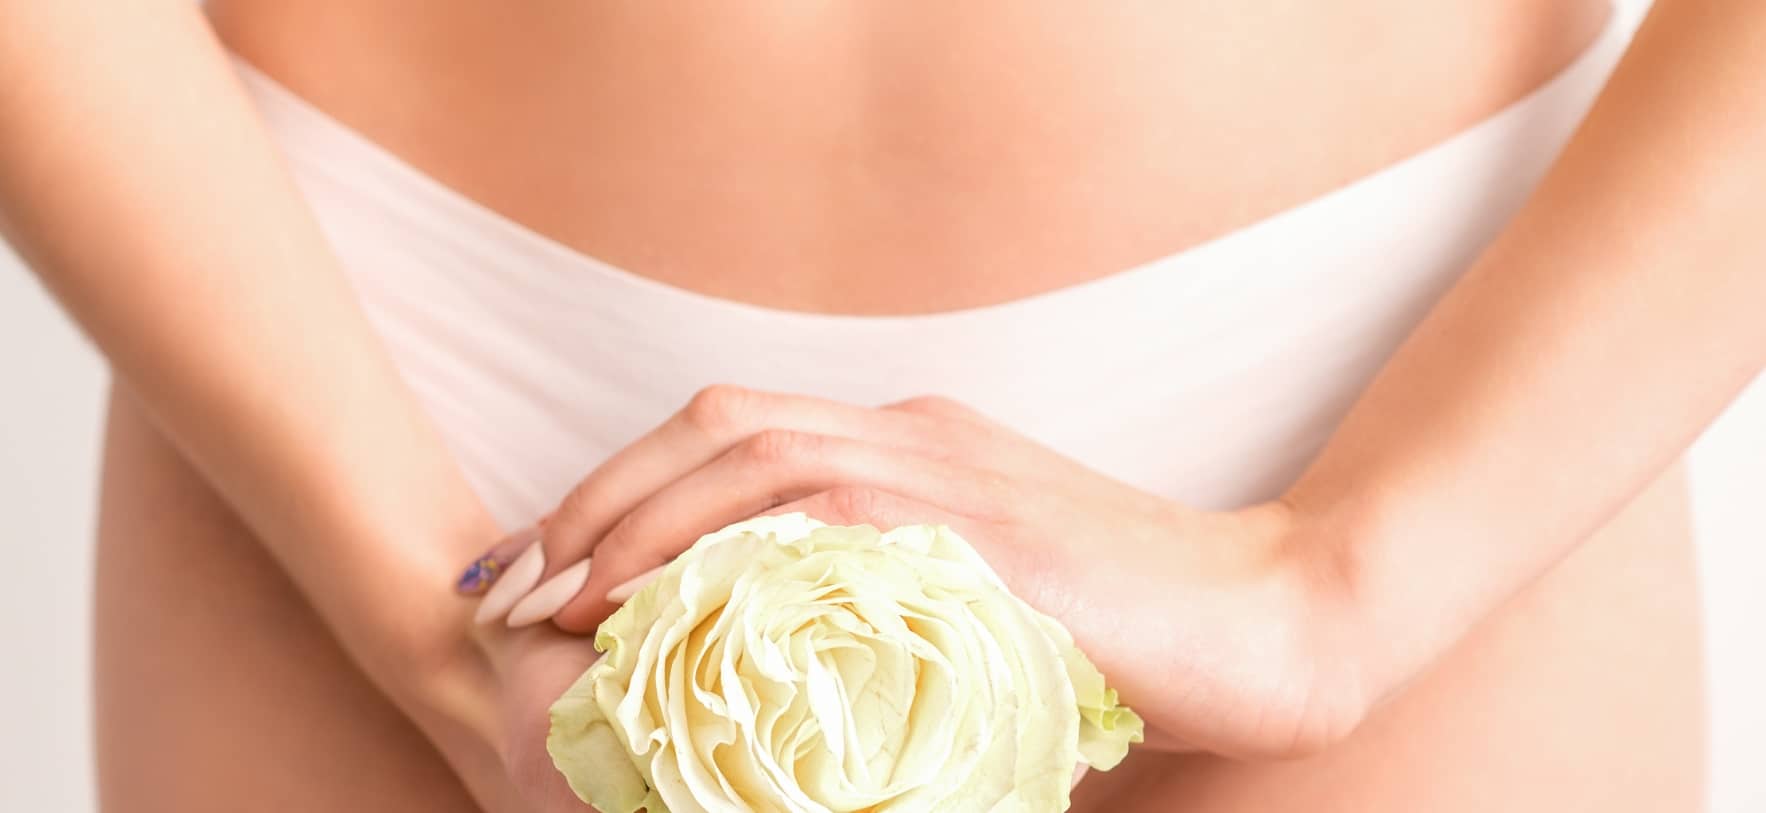 Eine Frau hält eine zarte Blume in ihren Händen. Sie bedeckt damit Ihre Bikinizone als Symbolbild für eine Intimkorrektur.